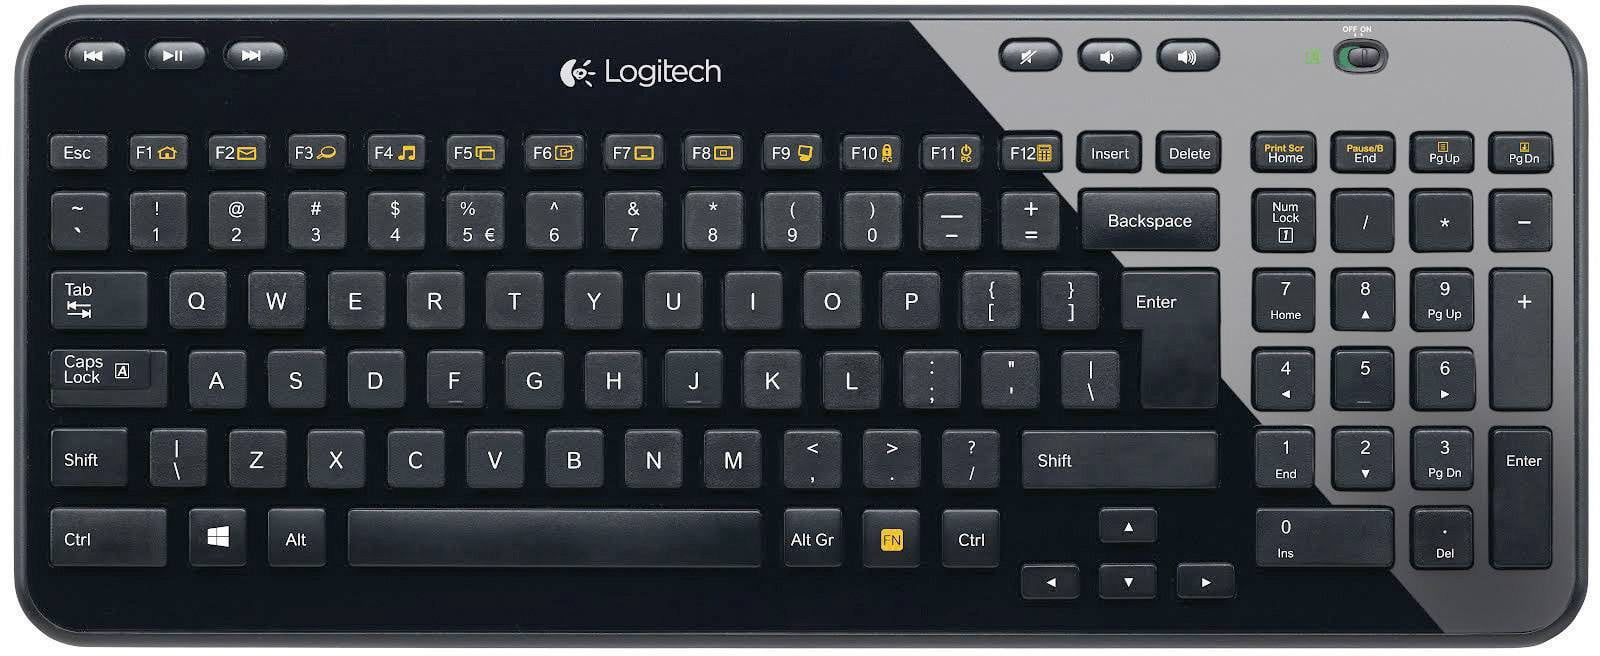 Logitech K360 Wireless Keyboard German Layout